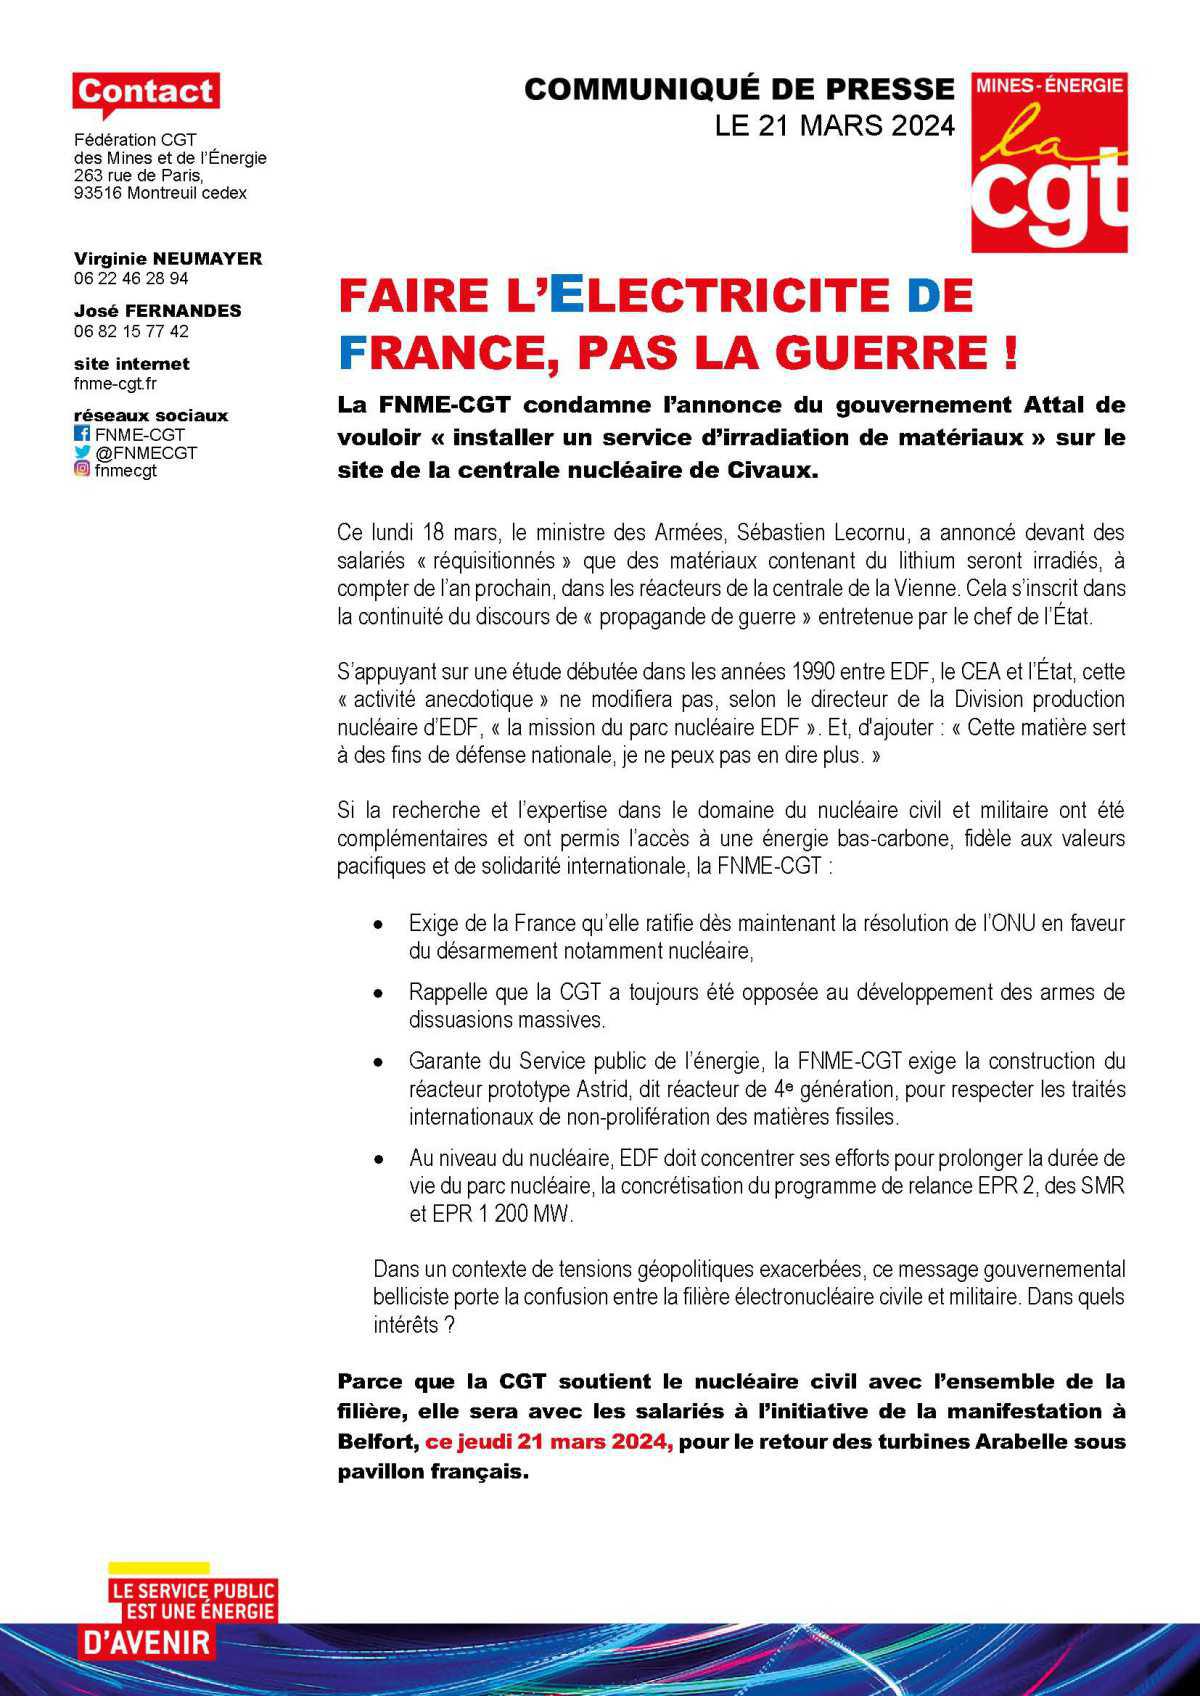 Faire L'Electricité De France, Pas la Guerre !